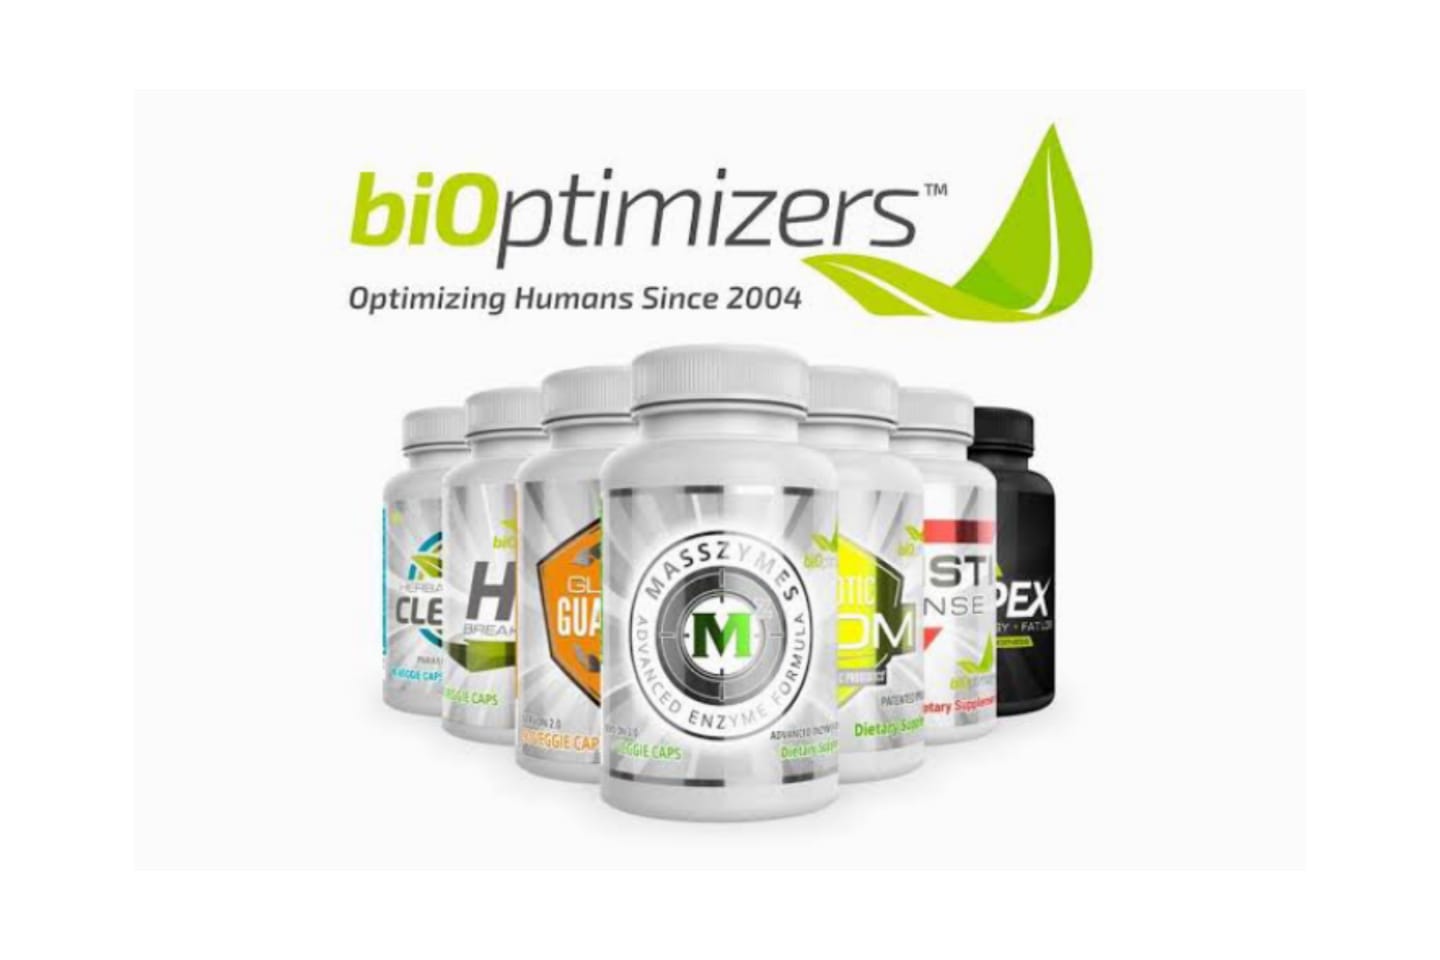 bioptimizers